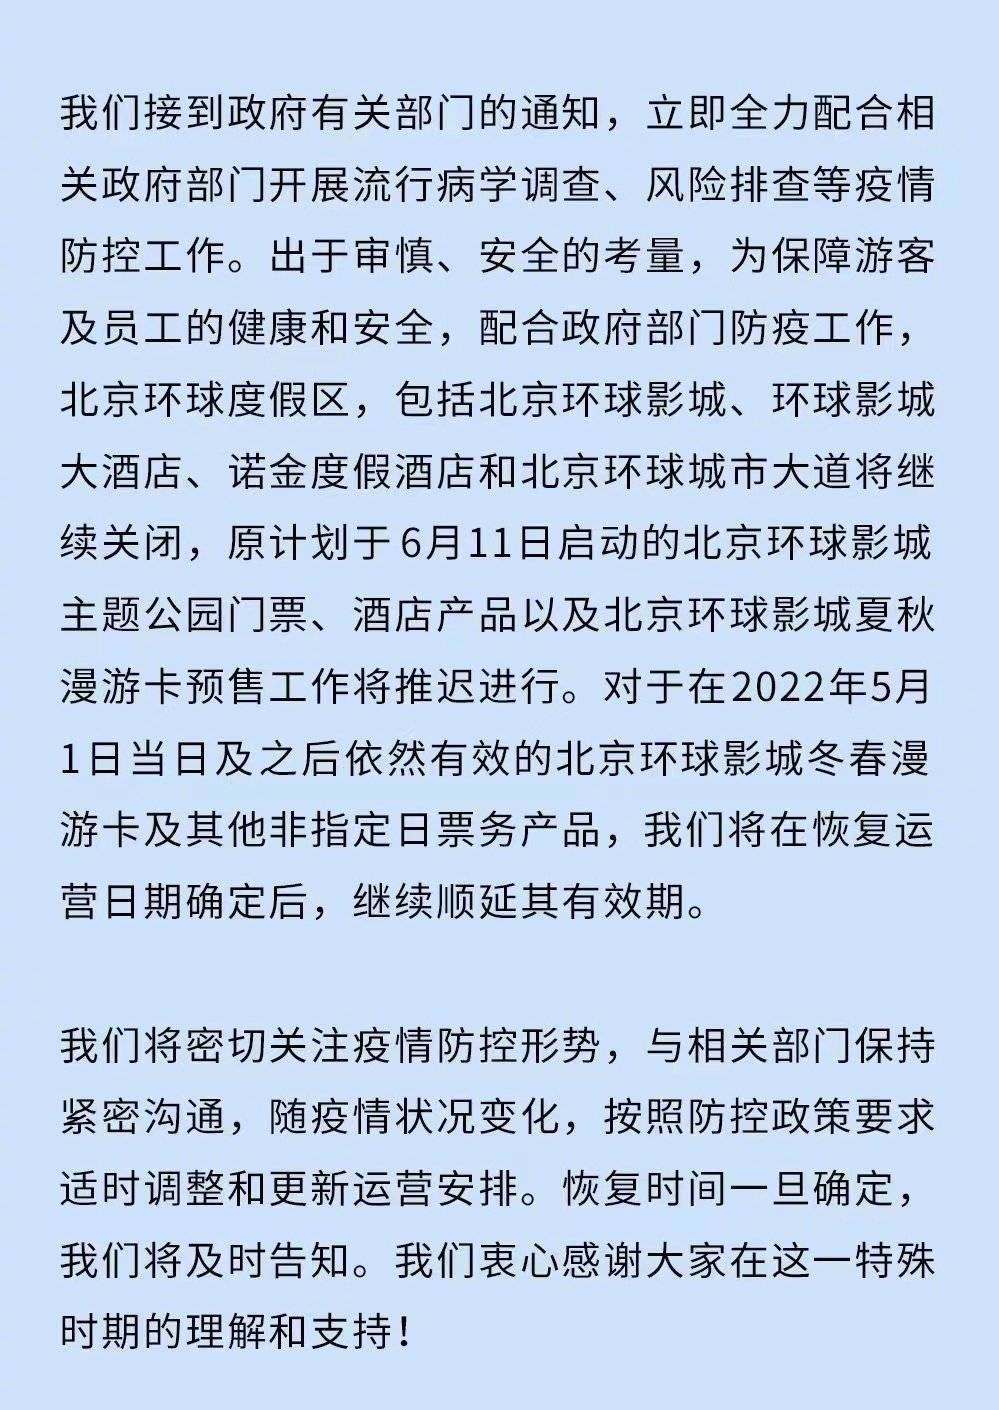 北京环球度假区发布公告 北京环球度假区将继续关闭 